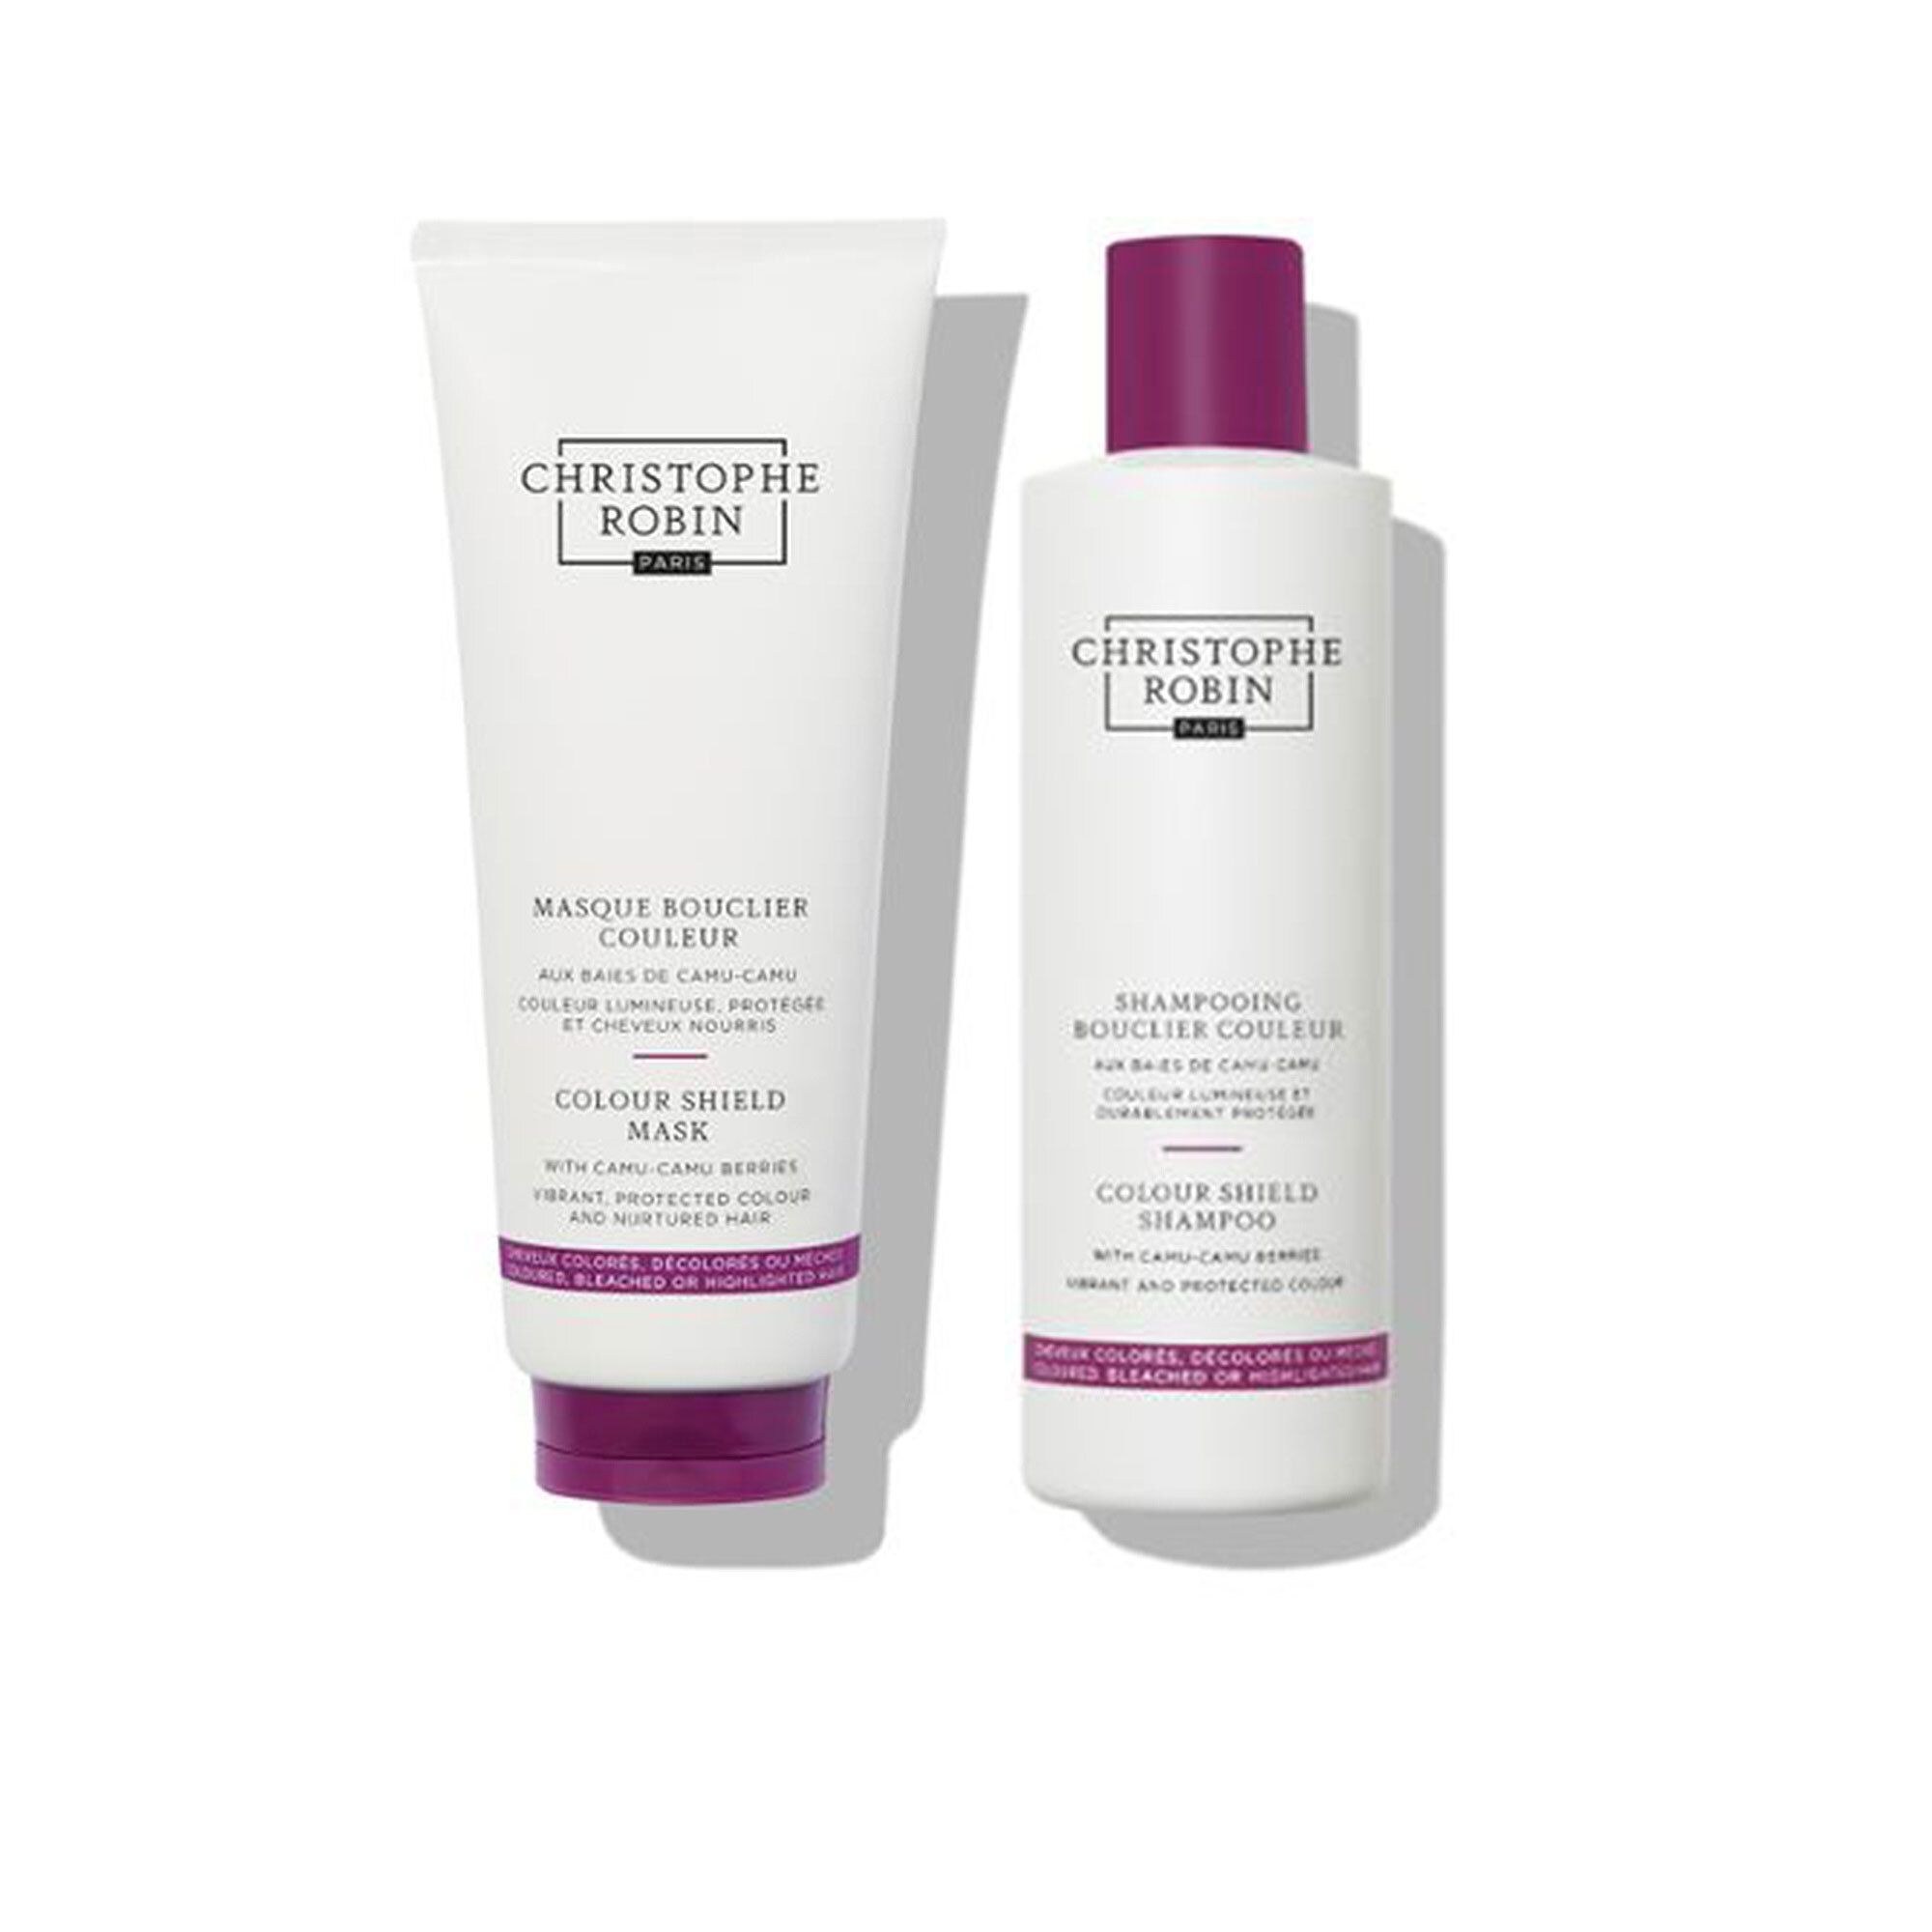 Image of Colour Shiled Duo: shampoo + maschera per mantenimento colore